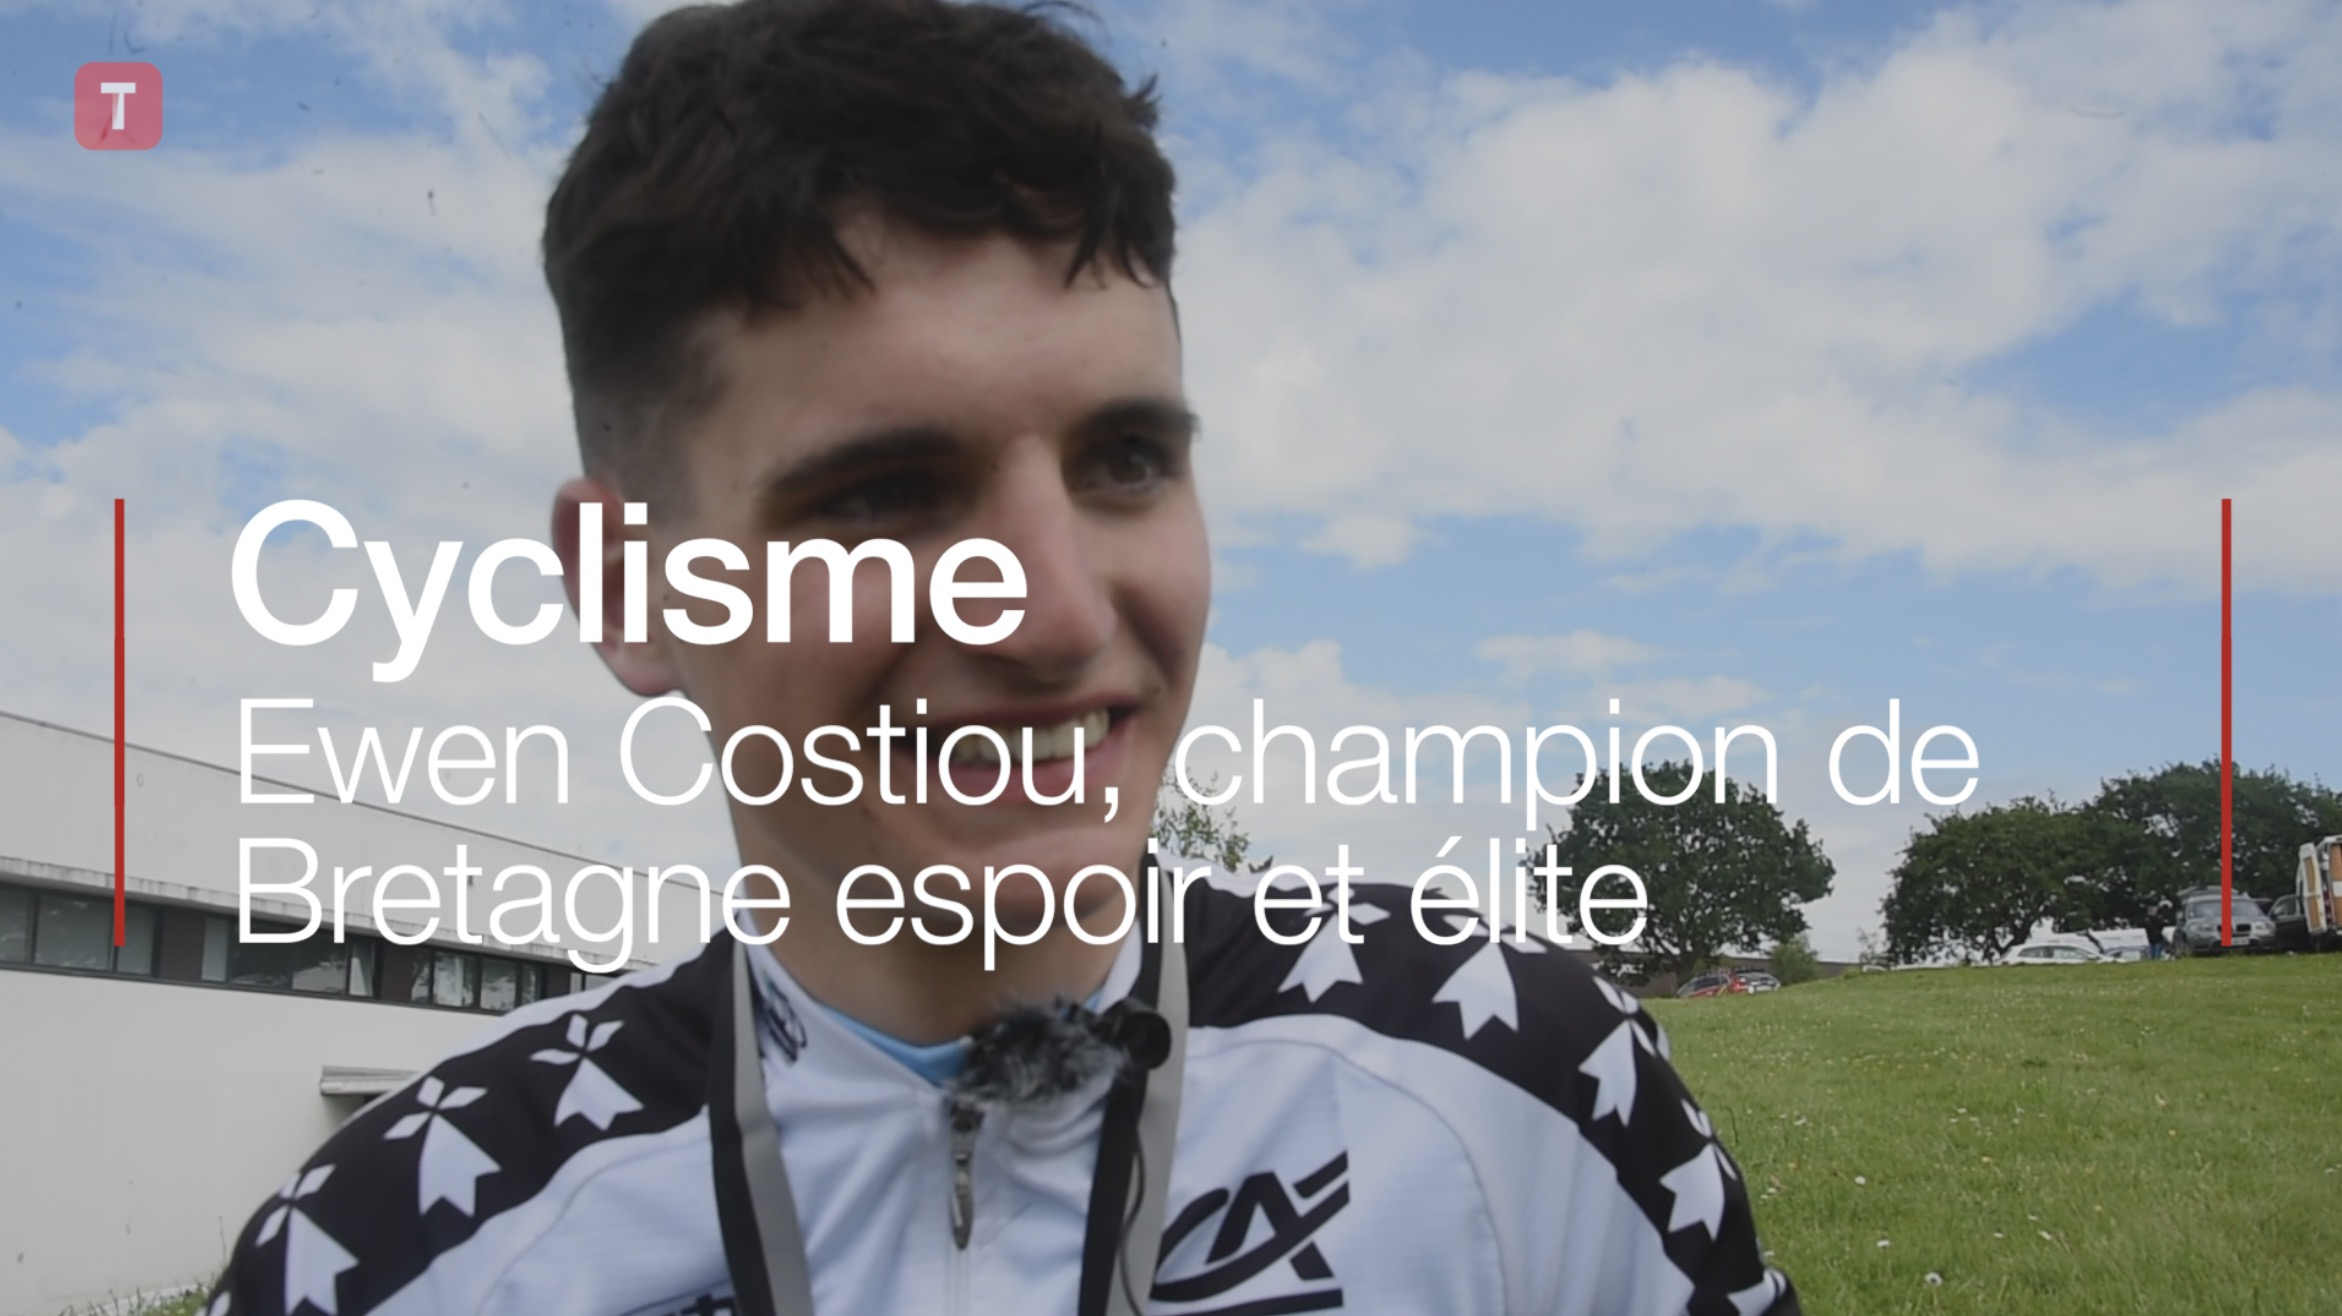 Cyclisme. Ewen Costiou, champion de Bretagne espoir et élite (Le Télégramme)